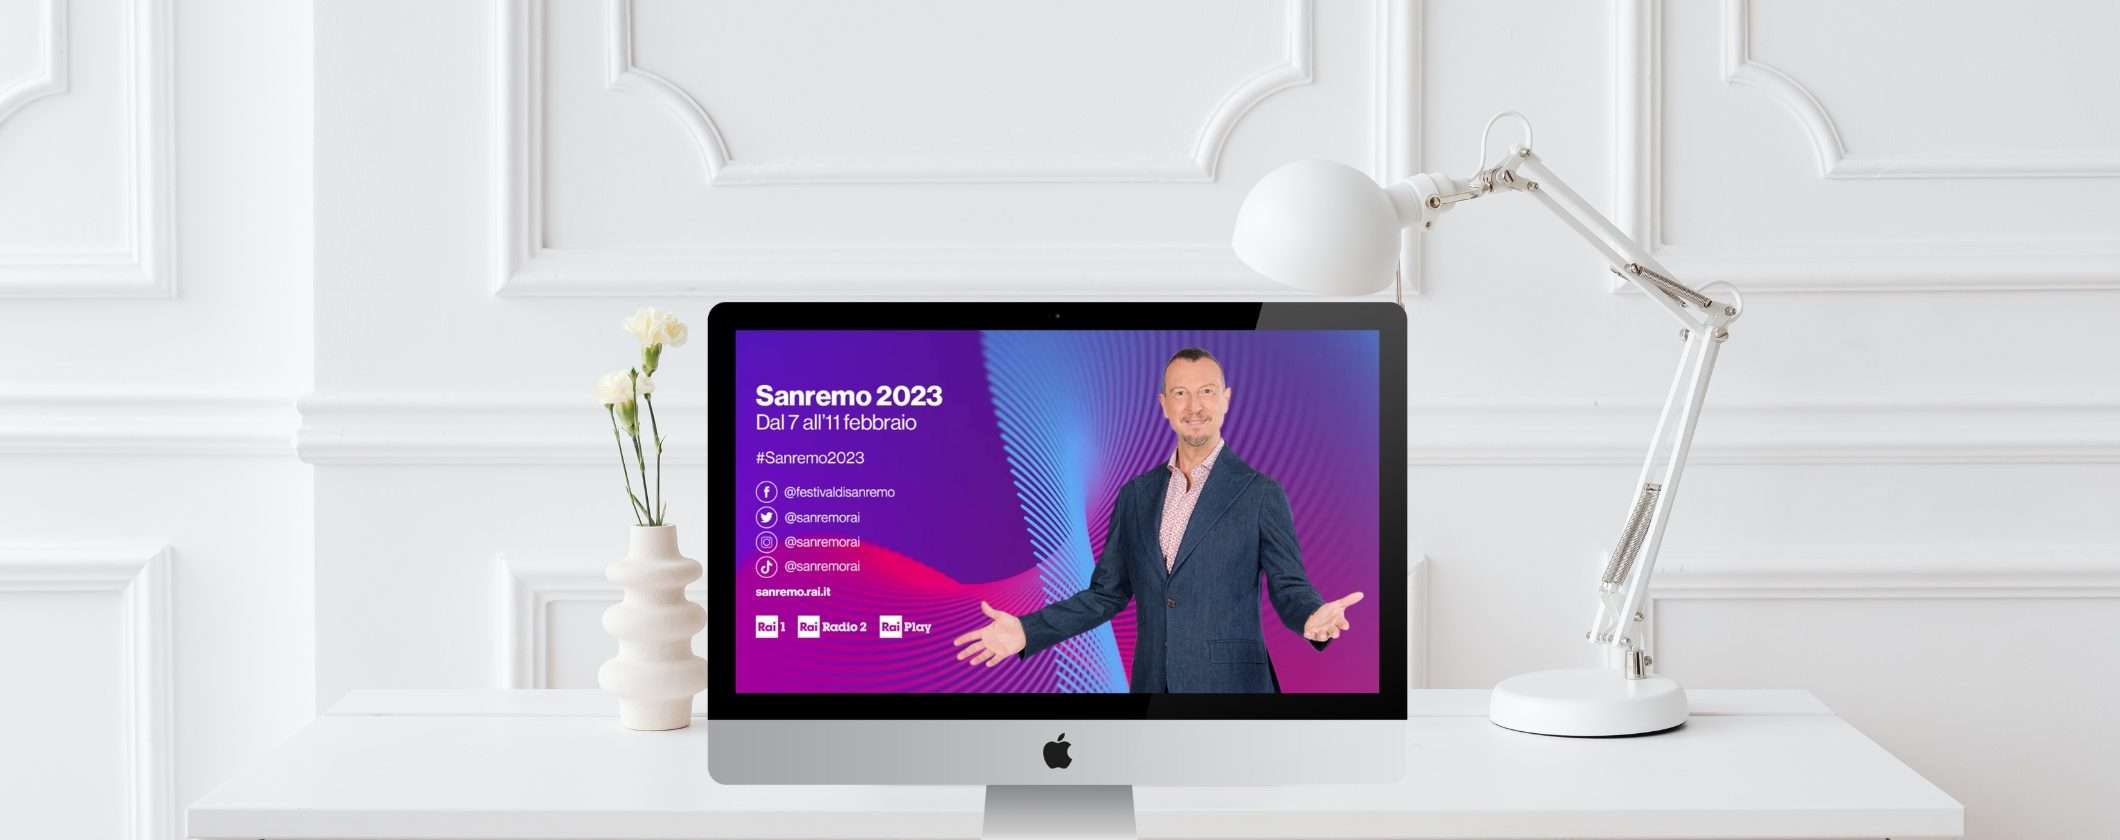 Sanremo 2023: come vedere tutte le repliche in streaming